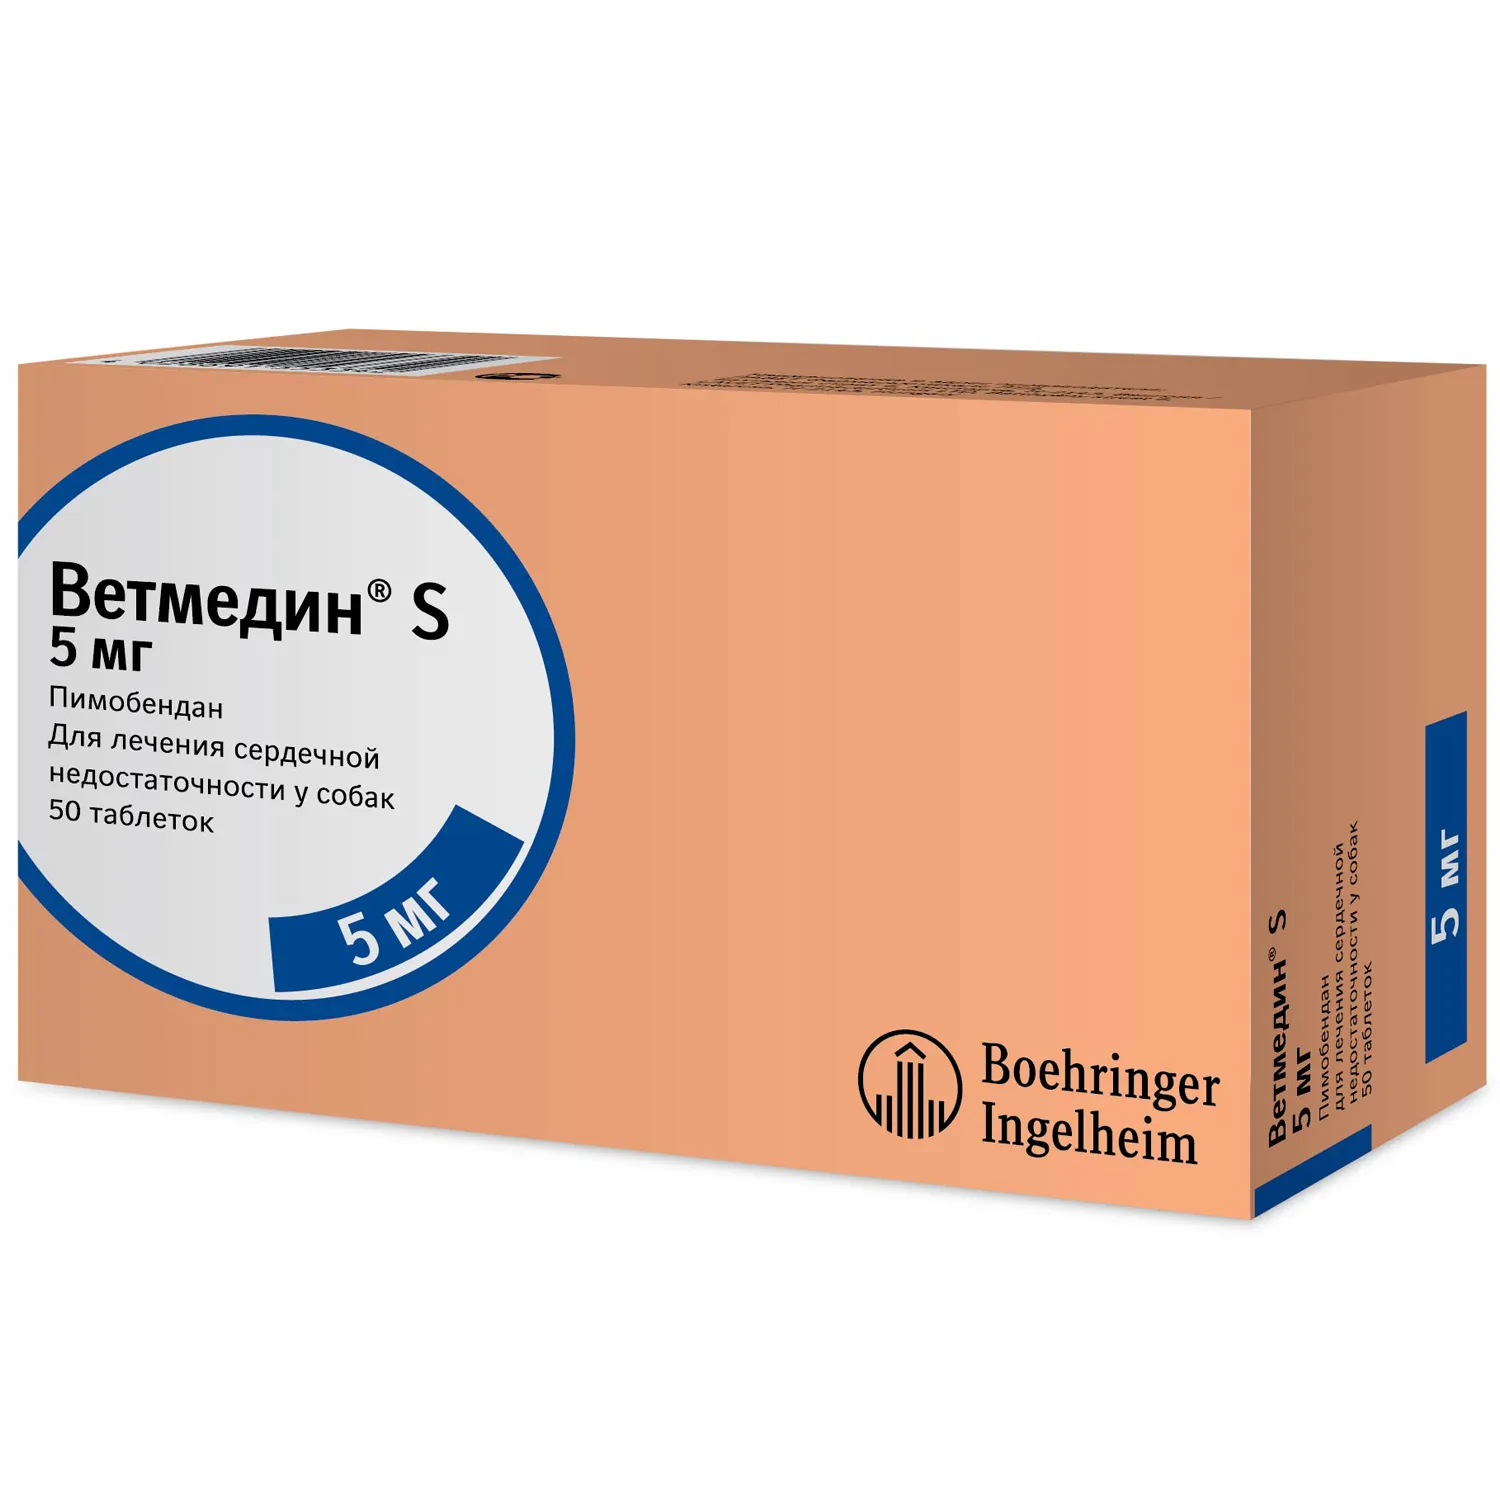 BI Ветмедин® S 5 мг – жевательные таблетки для лечения сердечной недостаточности у собак, 50 таб.